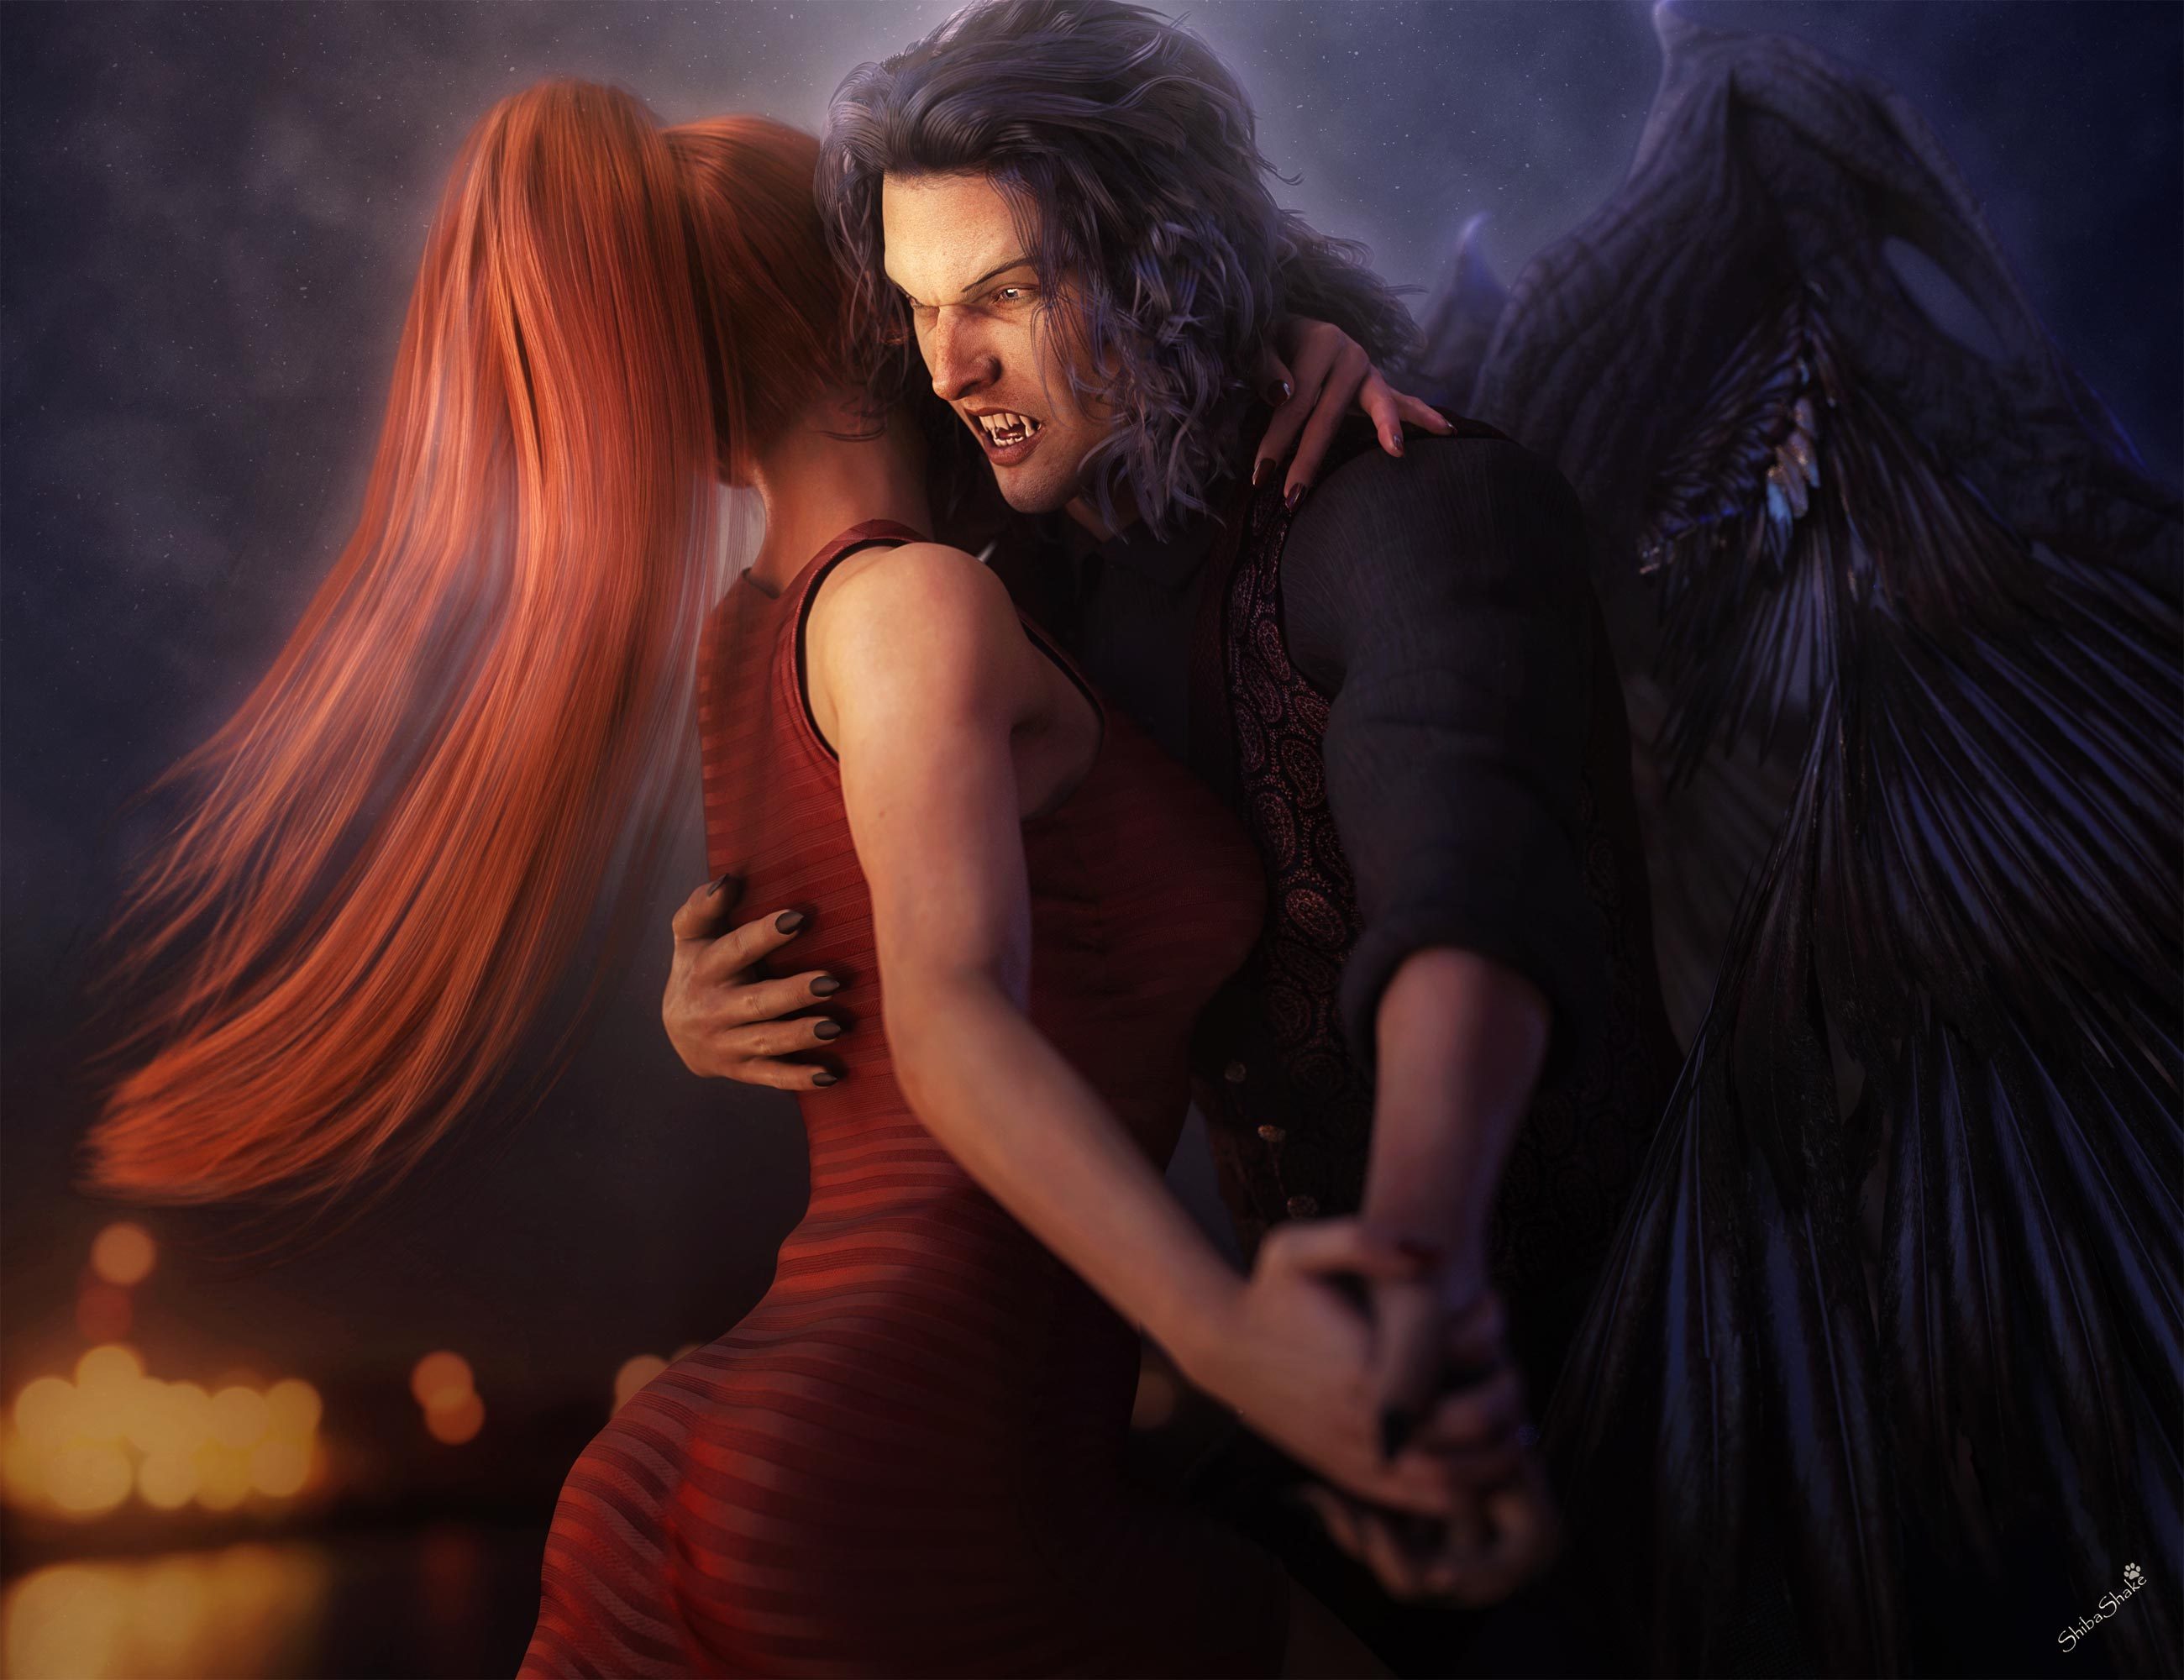 Неразумный ангел в танце с демоном 10. Вампир и девушка любовь. Влюбленные фэнтези. Демоны любви. Фэнтези любовь.